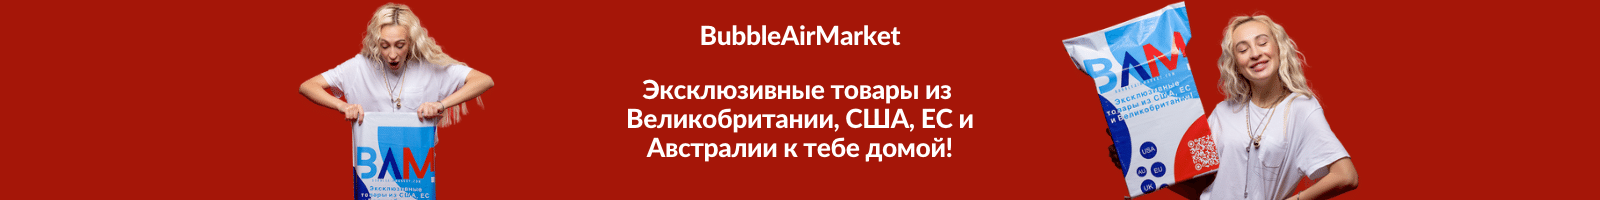 BubbleAirMarket